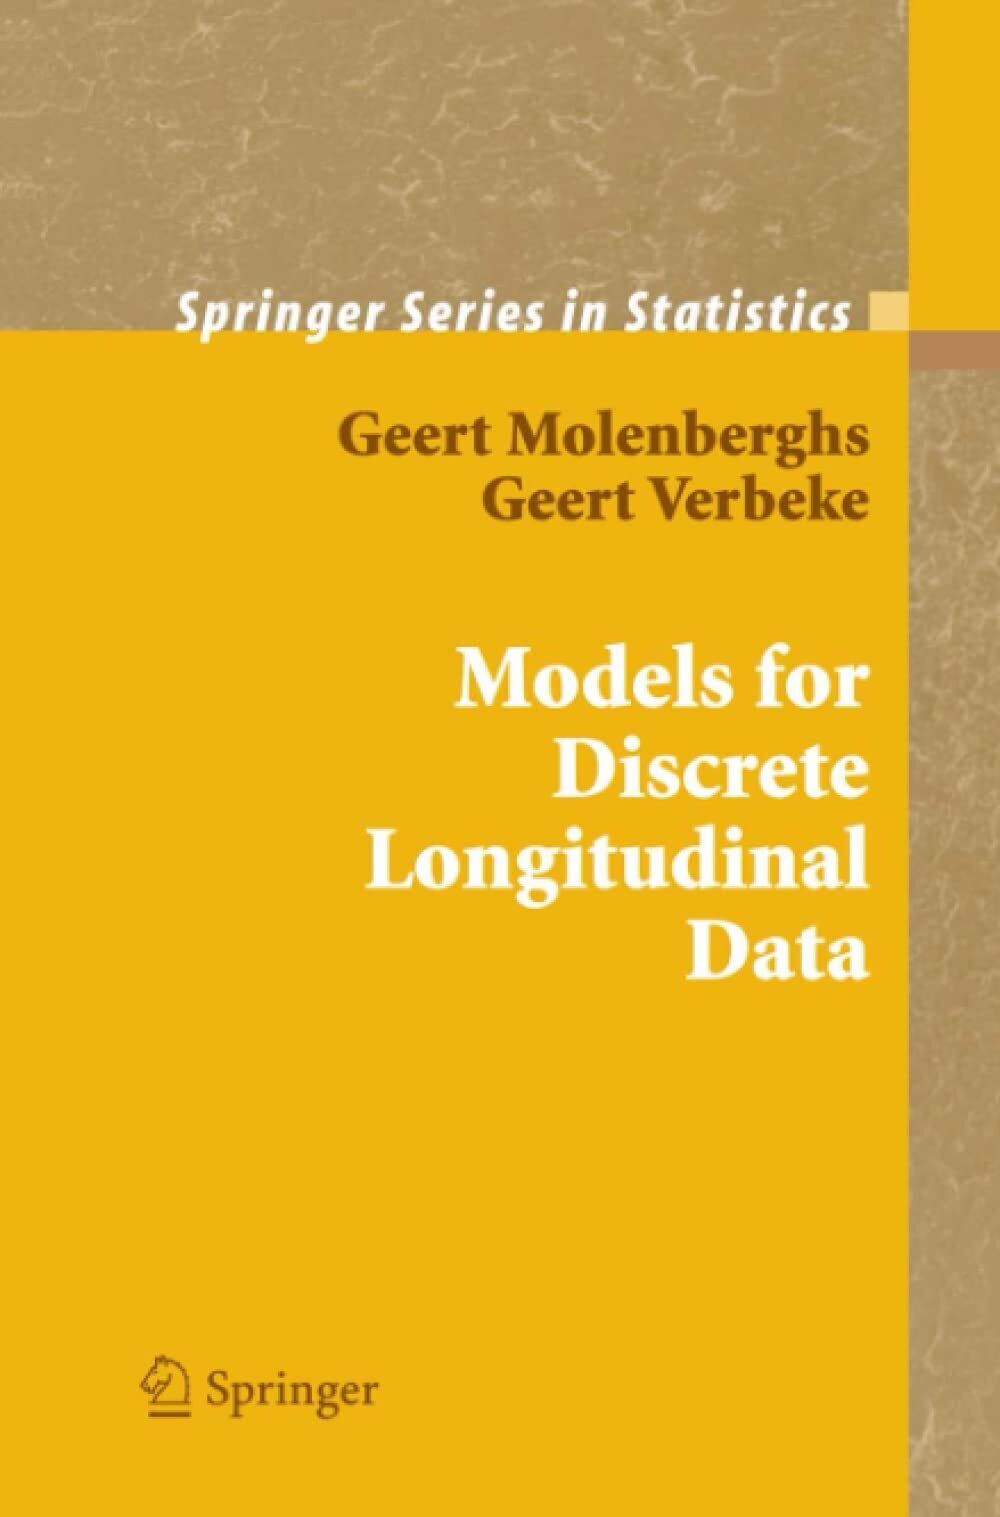 Models for Discrete Longitudinal Data - Geert Molenberghs, Geert Verbeke - 2010